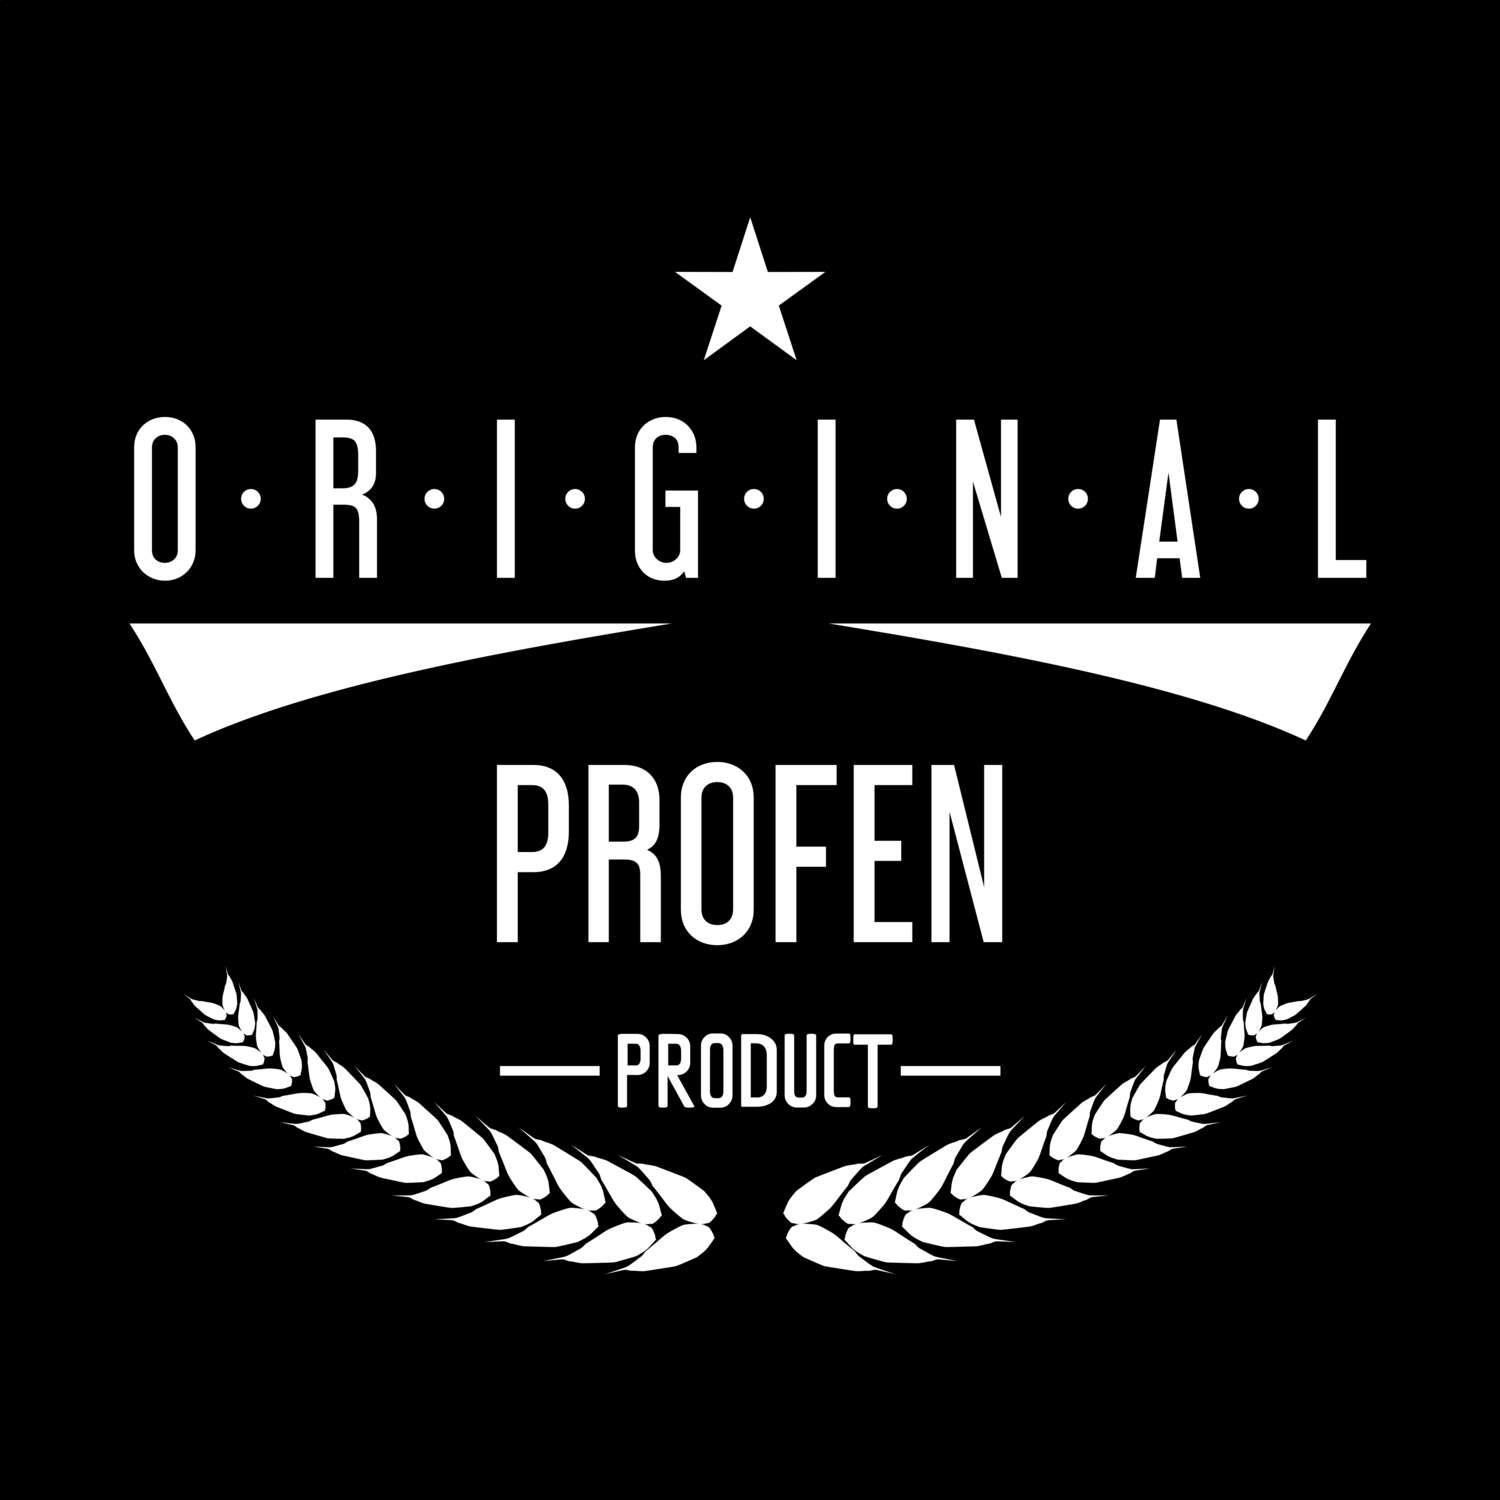 Profen T-Shirt »Original Product«